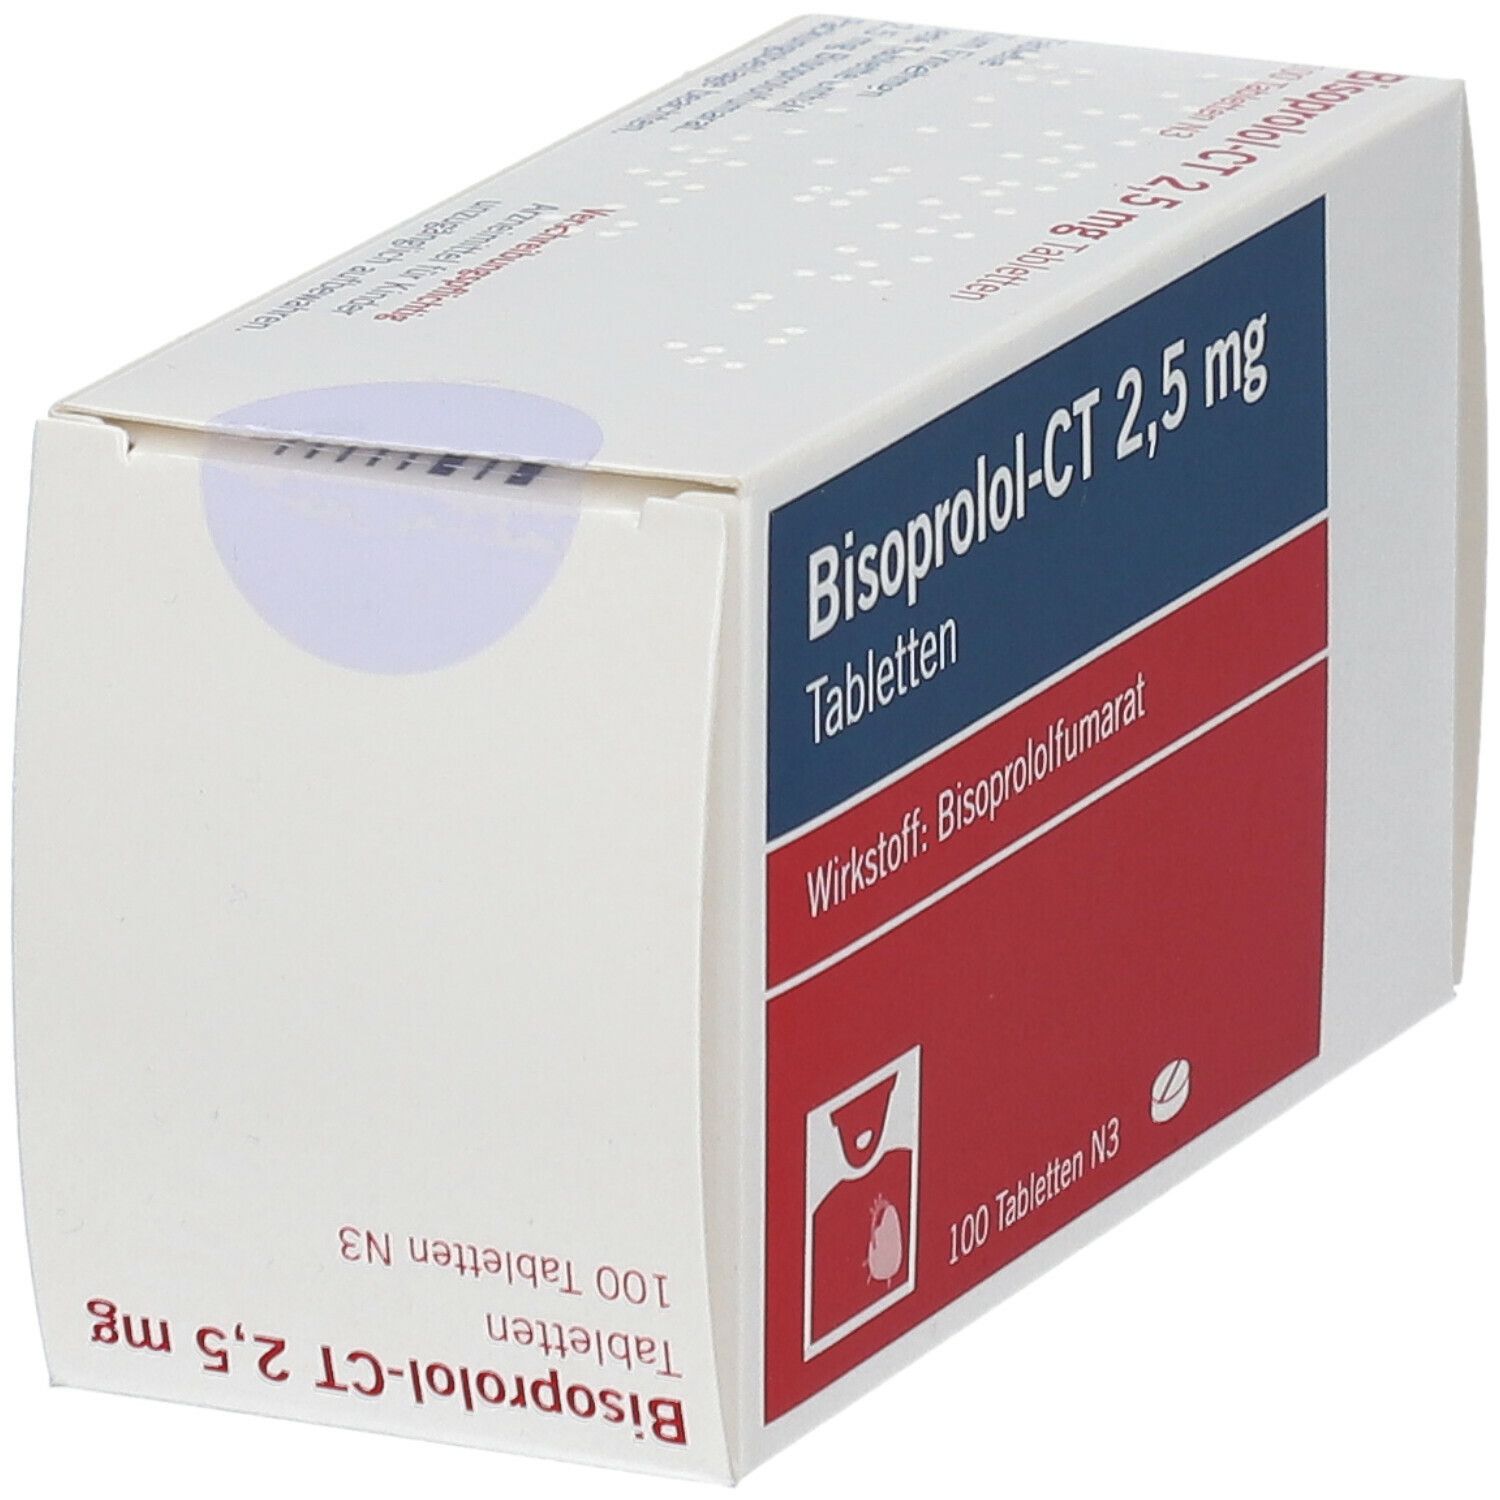 Bisoprolol - Ct 2.5Mg